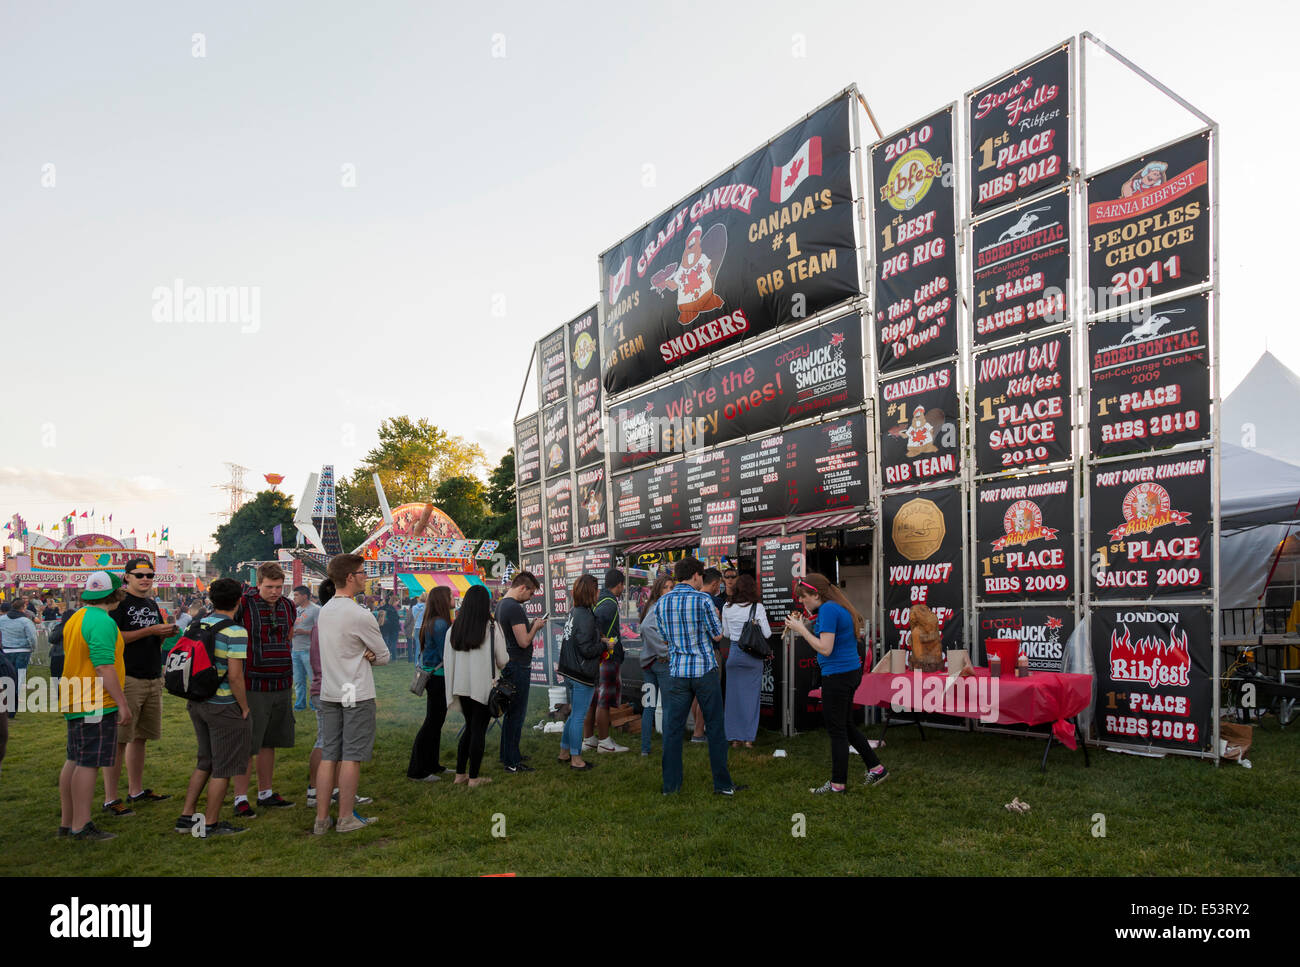 Un 'Loco Canuck fumadores' los alimentos stand en el Festival de Música de 'Sonido' a Spencer Smith Park en la ciudad de Burlington, Ontario, Canadá. Foto de stock